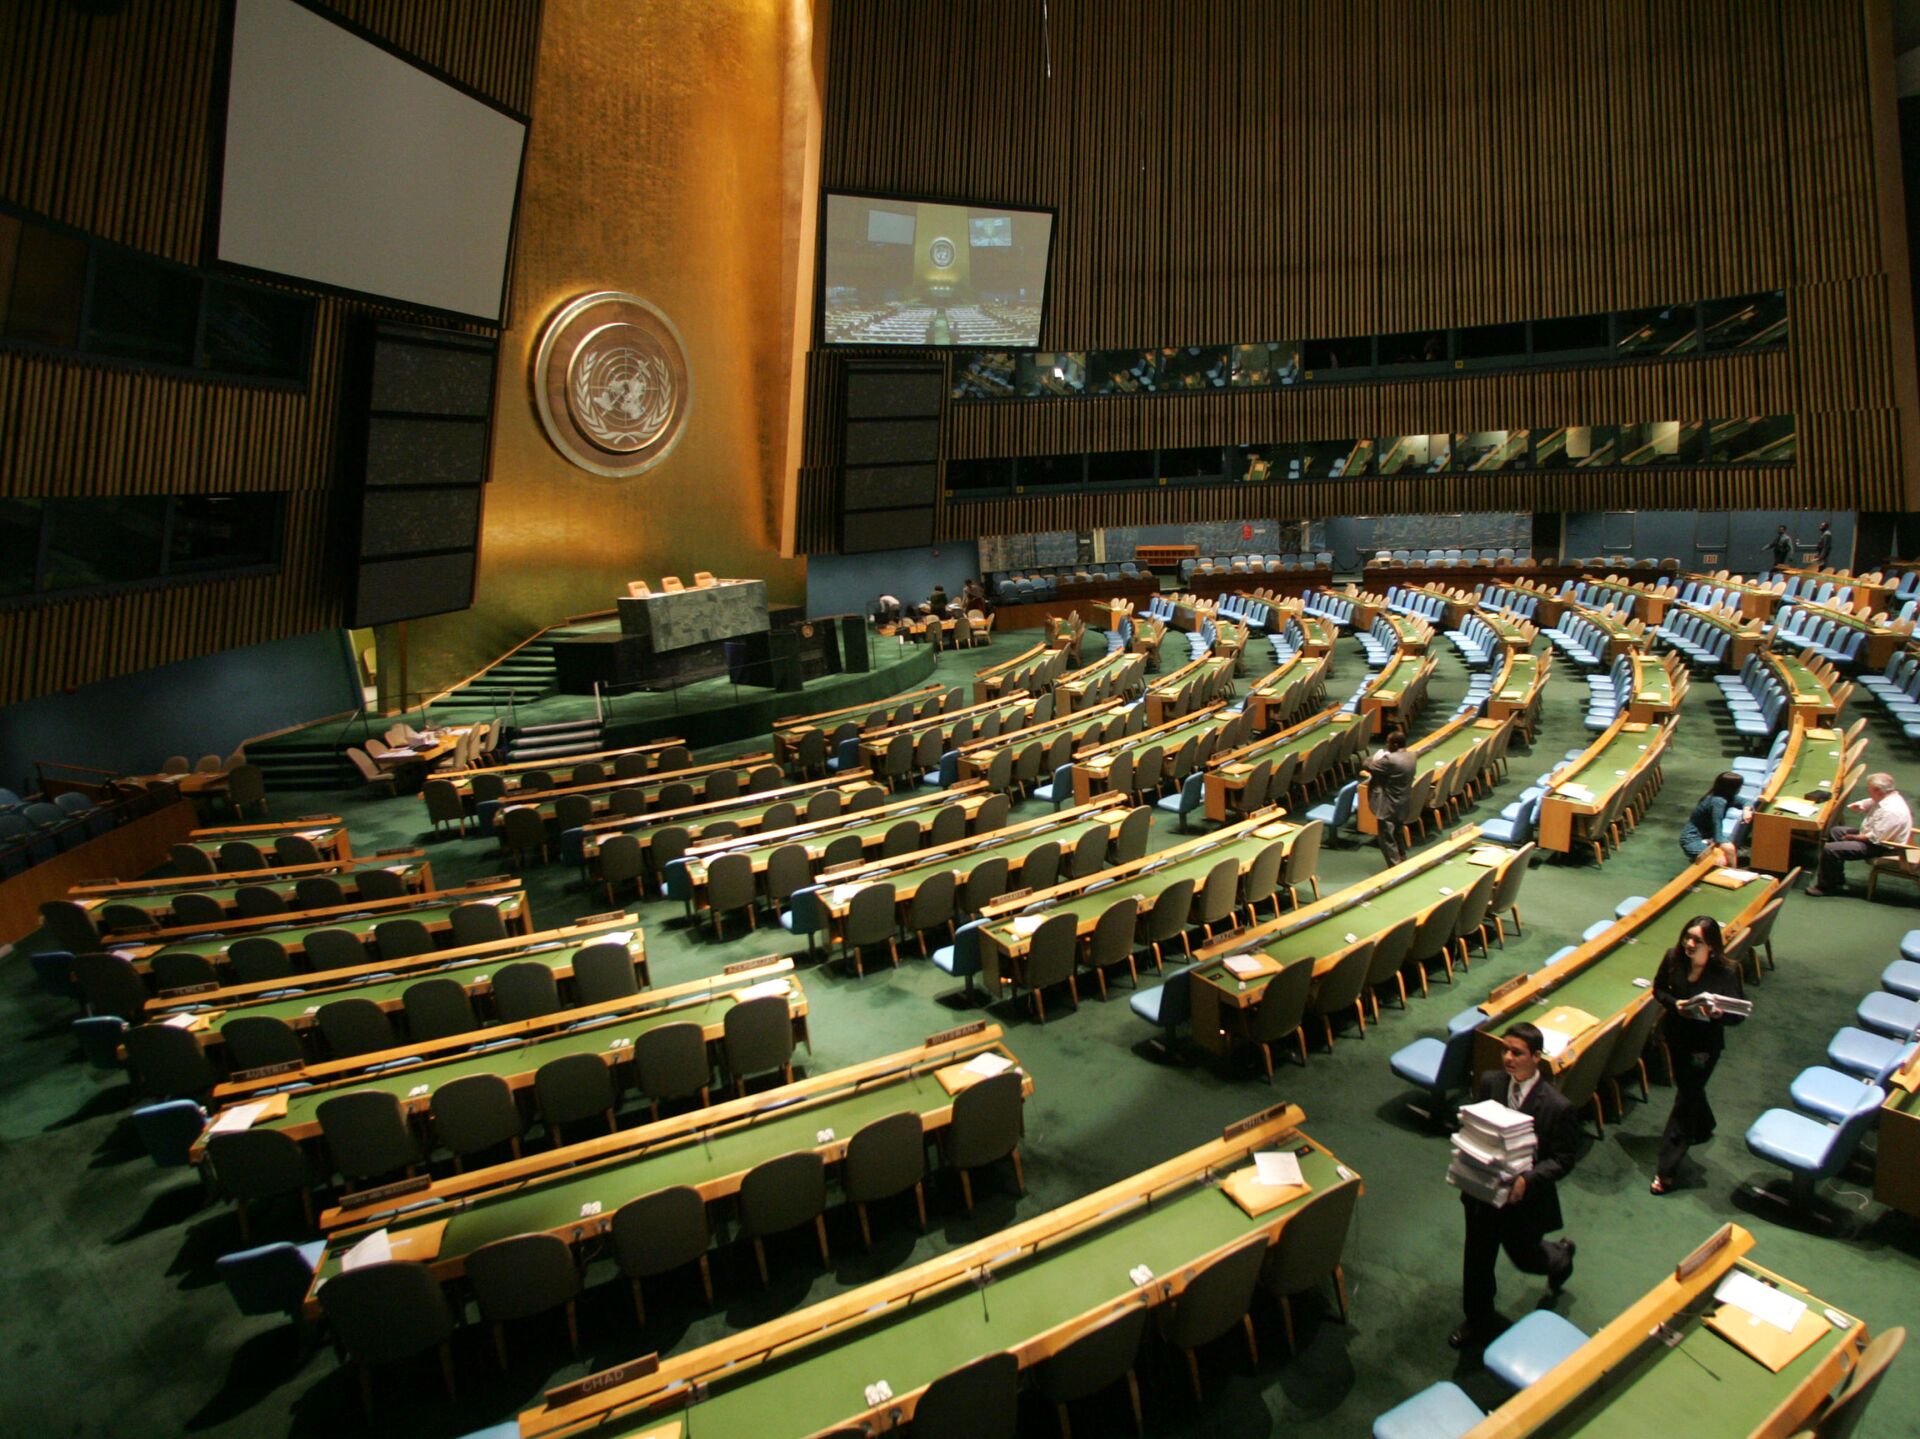 Зал оон. Генеральная Ассамблея ООН (га ООН). Зал Генеральной Ассамблеи ООН. Зал заседания Генассамблеи ООН трибуна. Генеральная Ассамблея ООН Нью-Йорк.